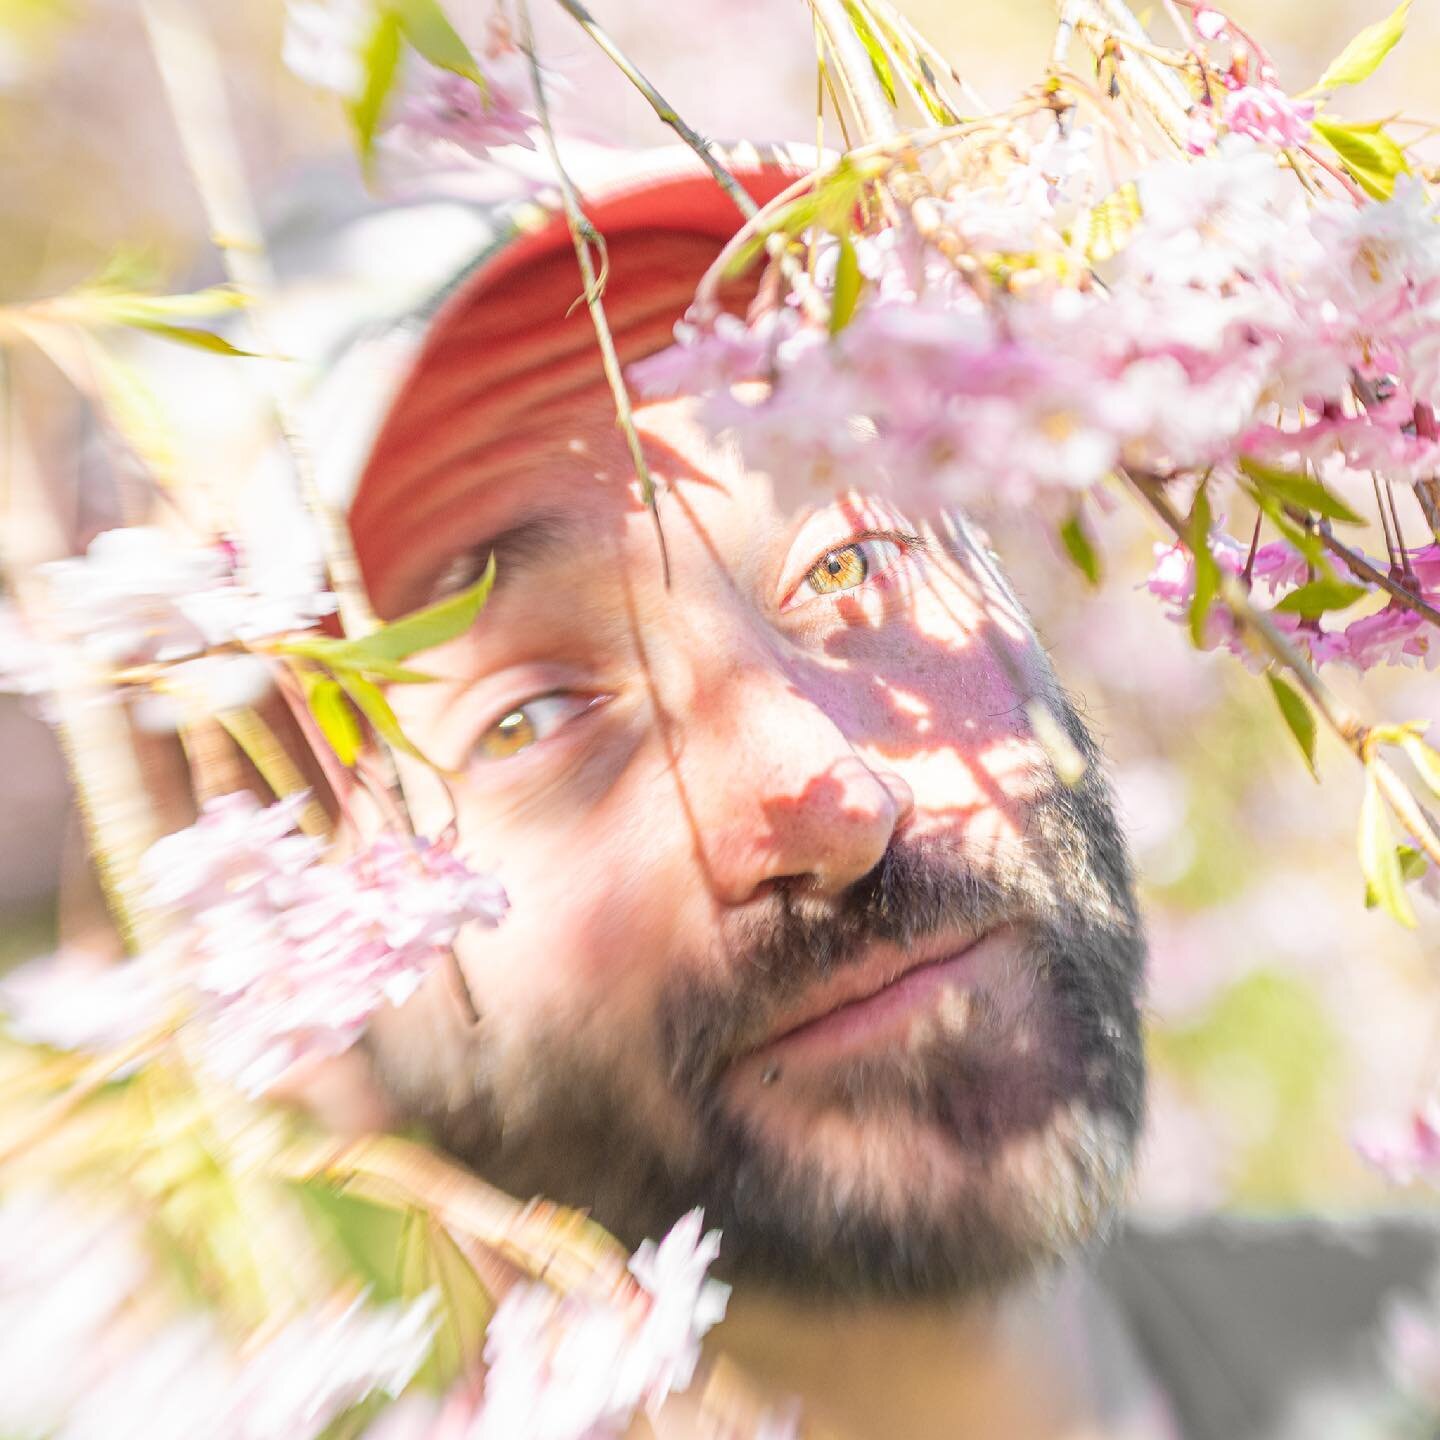 Jota primaveral bien esperanzada en creativa concetual.

📍 | Queen Elizabeth Park
🇨🇦 | Vancouver, BC @inside_vancouver
📷 | Nikon D7500 + Lensbaby Composer @nikoncanada @lensbabyusa